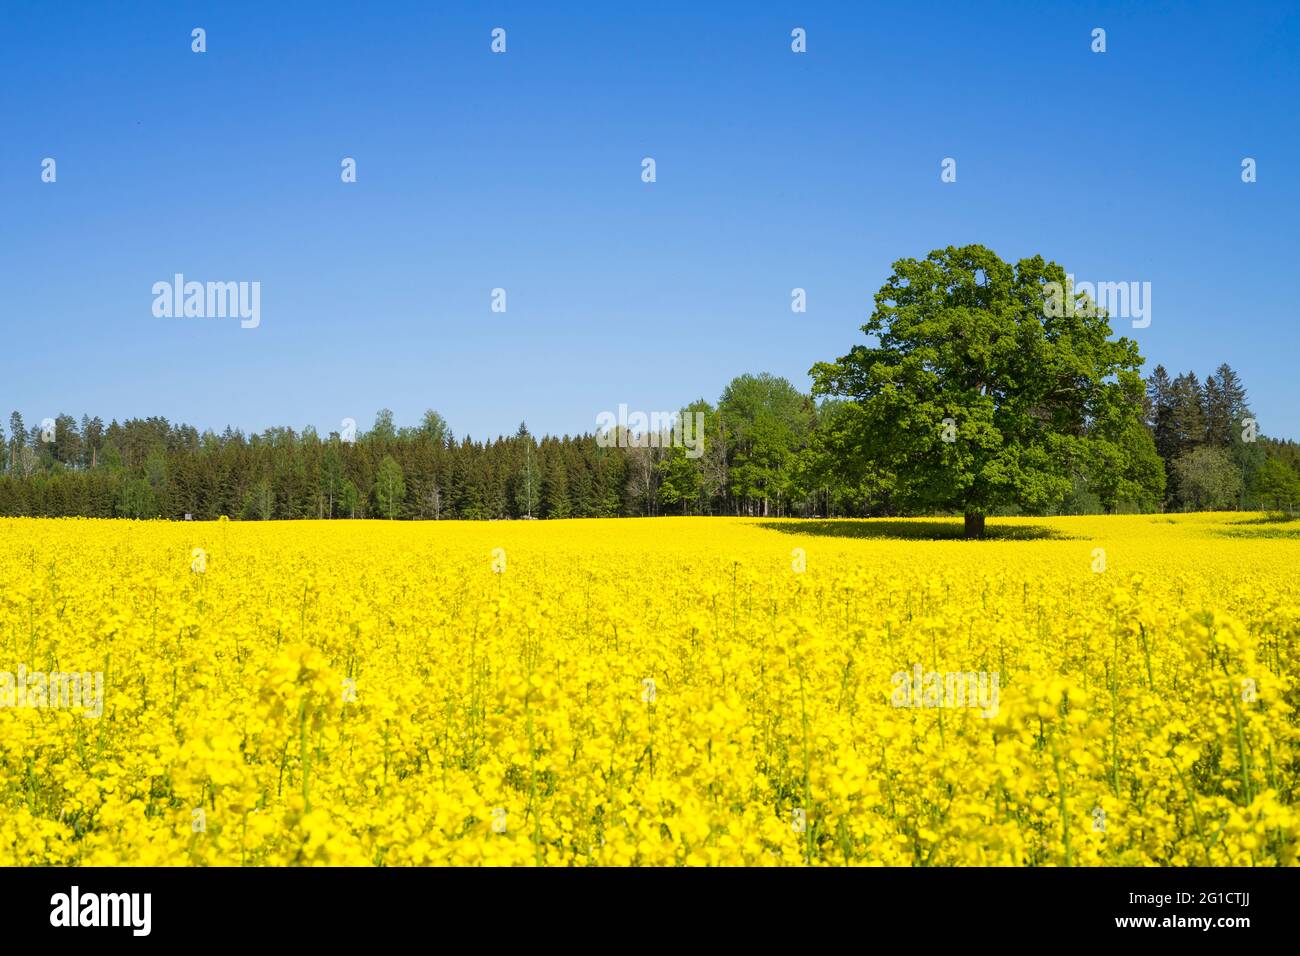 Champ de colza en Suède. Belles fleurs jaunes sur le terrain. Beau ciel  bleu le jour de l'été. Une image haute en couleur Photo Stock - Alamy